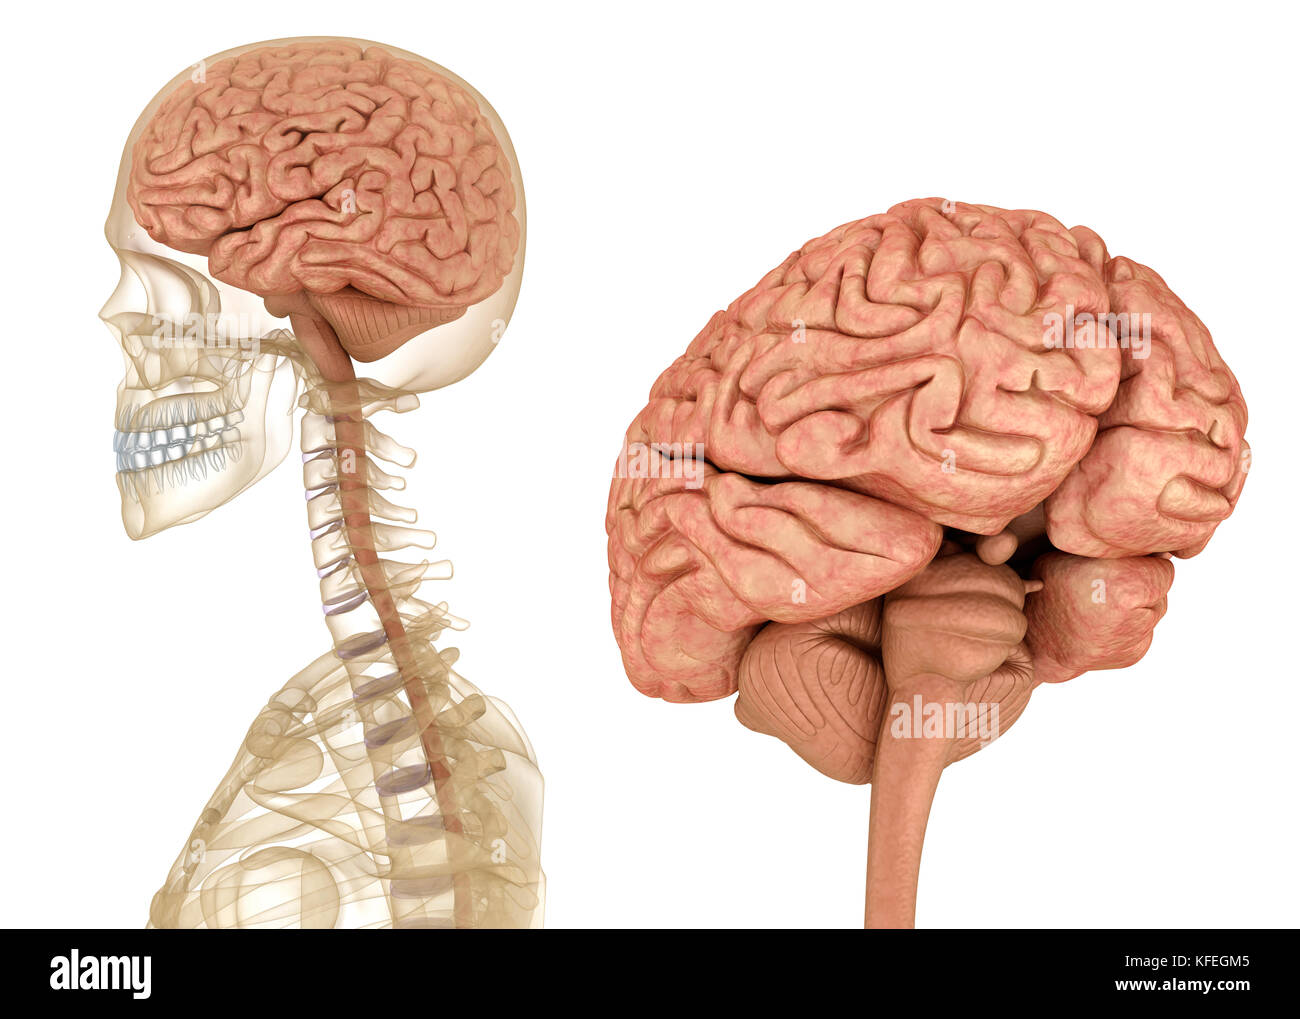 Gehirn und Skelett, Anatomie des Menschen. Medizinisch genaue 3D-Illustration Stockfoto